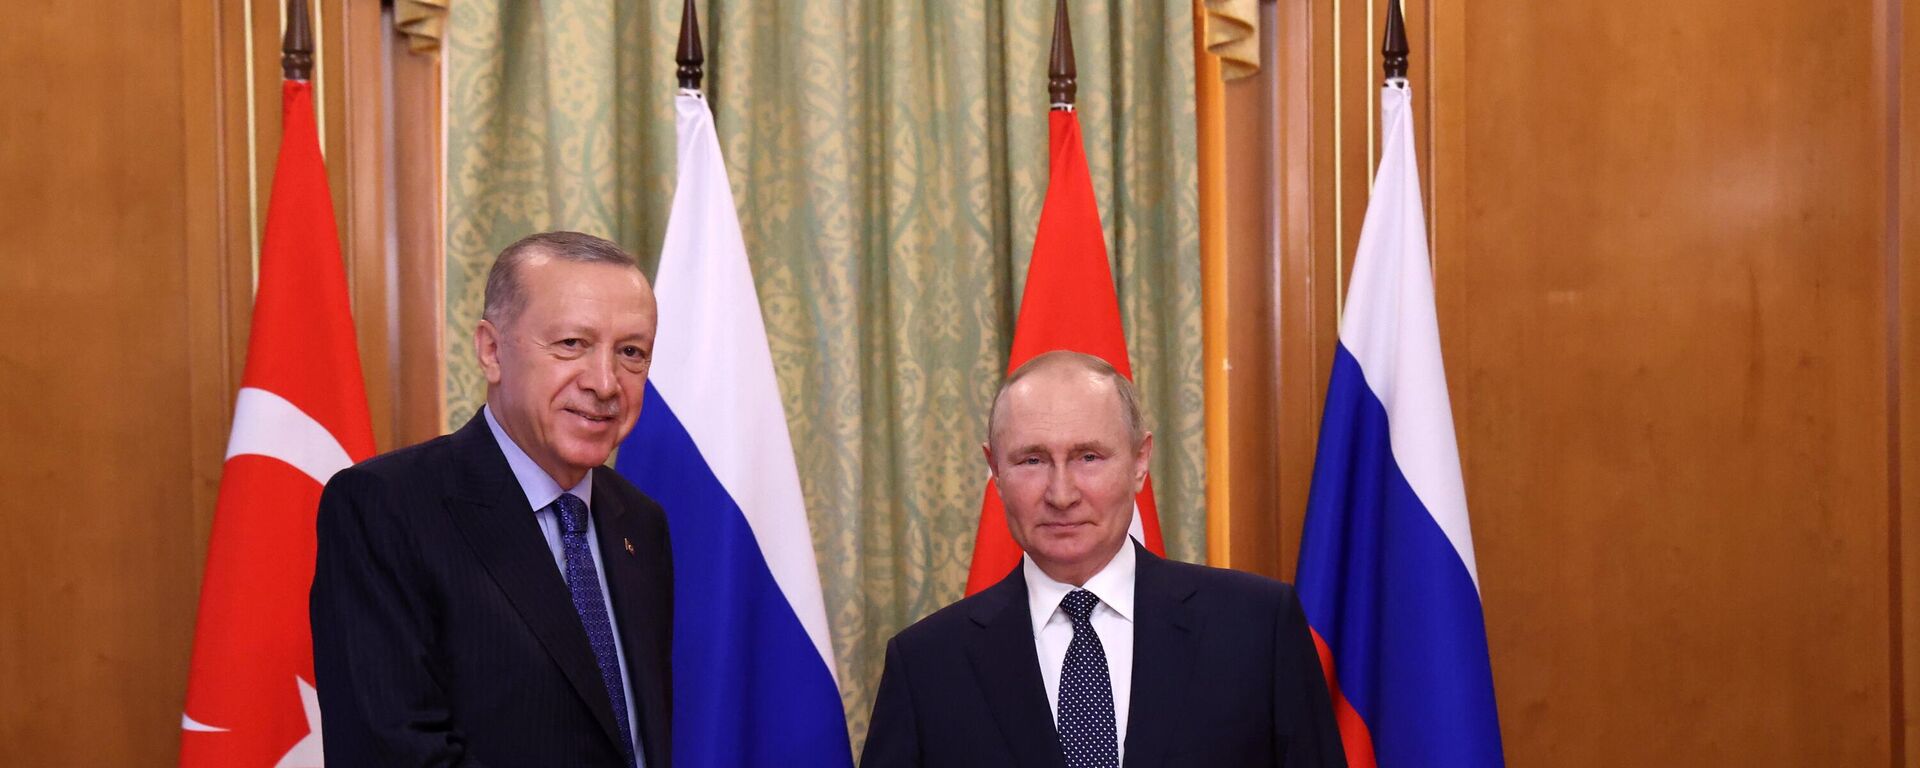 Tổng thống Nga Vladimir Putin và Tổng thống Thổ Nhĩ Kỳ Recep Tayyip Erdogan trong cuộc gặp ở Sochi - Sputnik Việt Nam, 1920, 22.09.2022